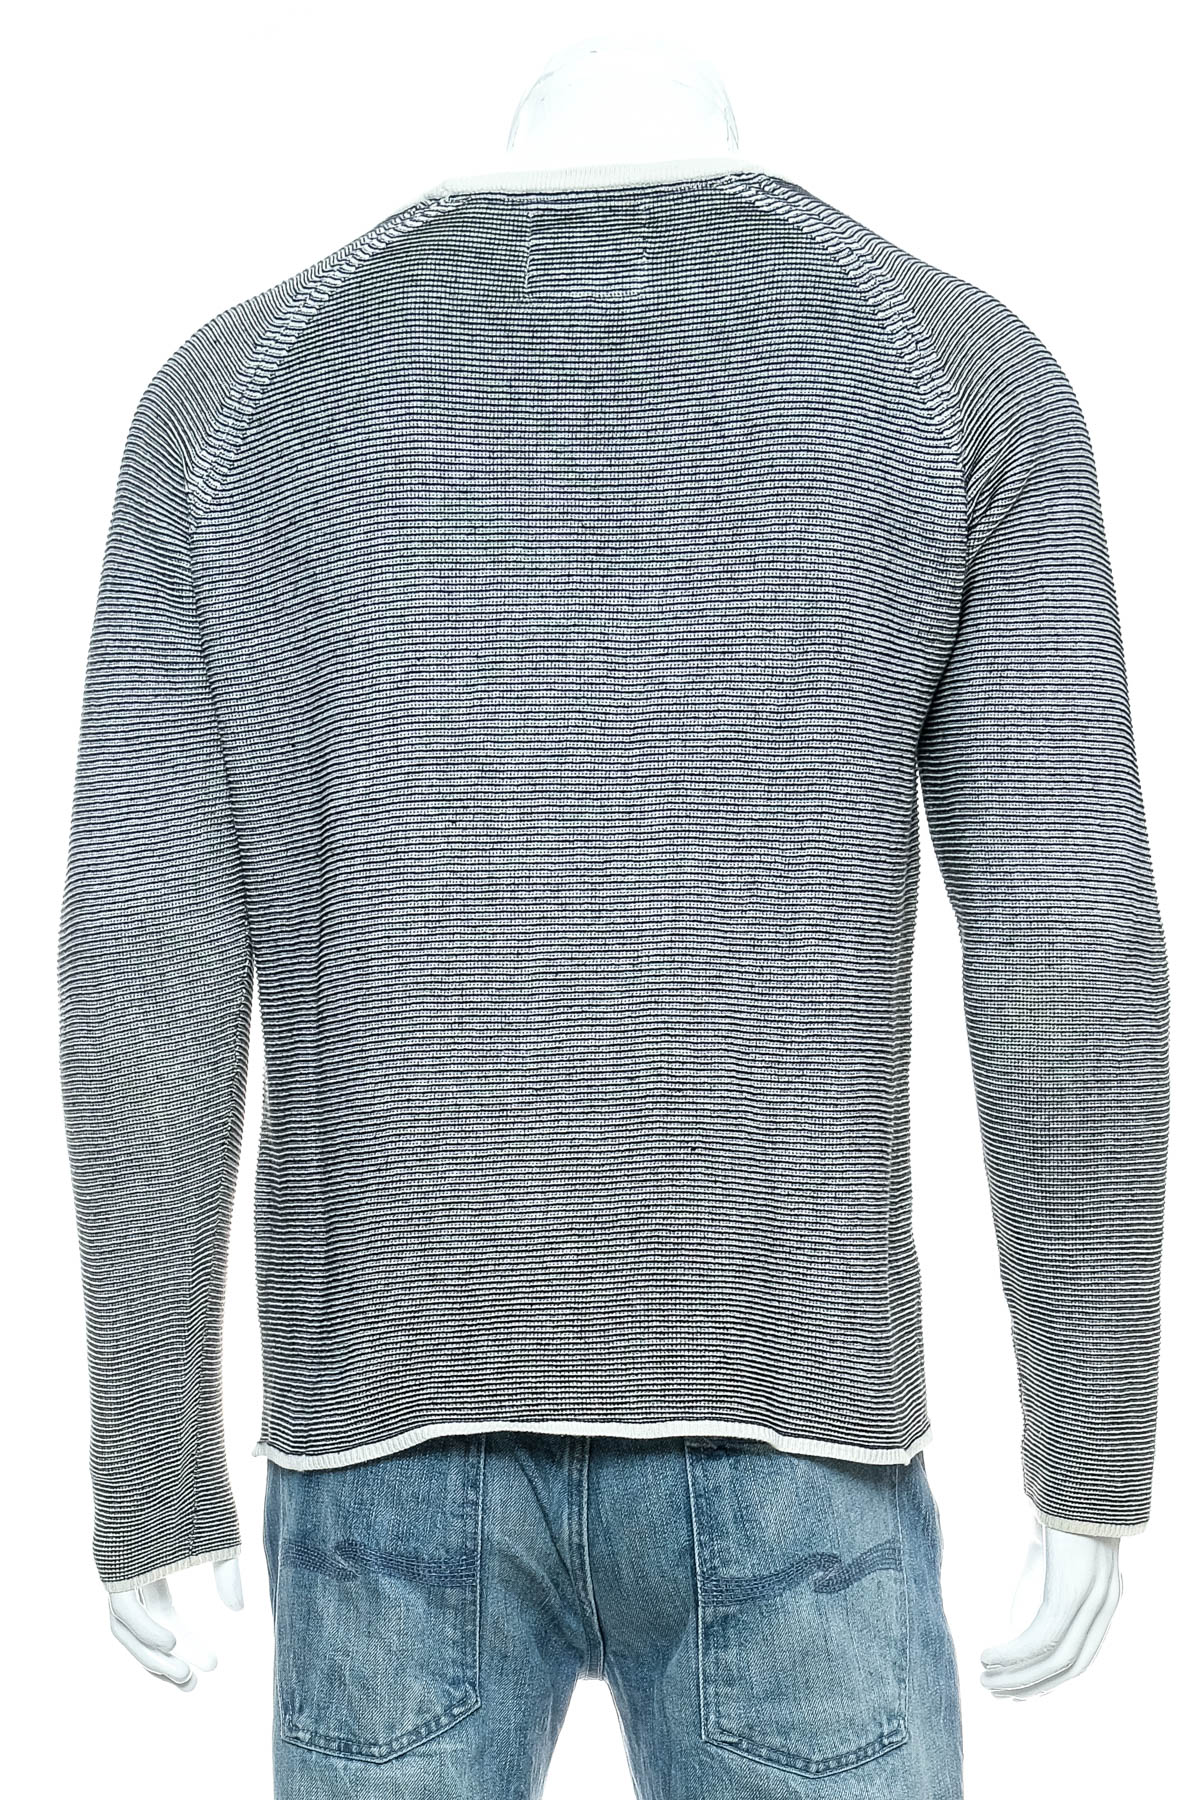 Men's sweater - REVOLUTION - 1